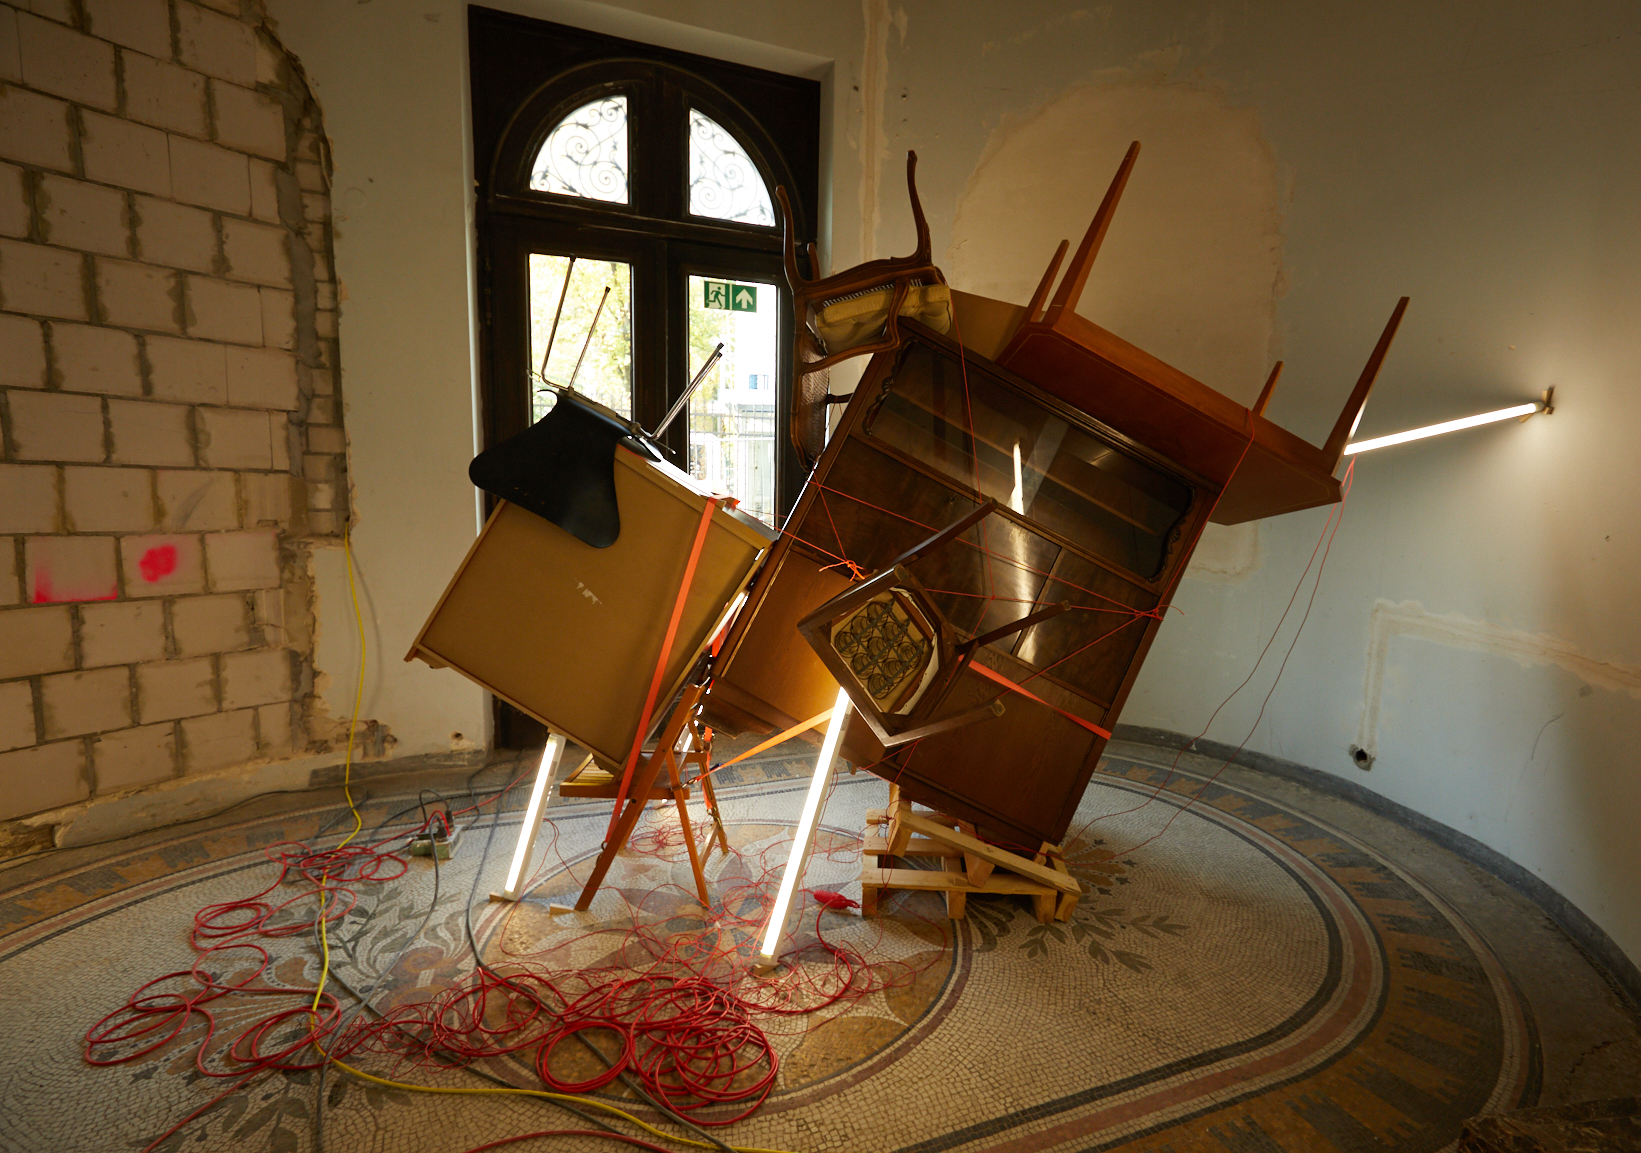 Installation des Künstlers Nir Alon, Hamburg auf der Baustelle des Jüdischen Museums Frankfurt, Untermainkai 14, anläßlich der Projekttage "Open House"